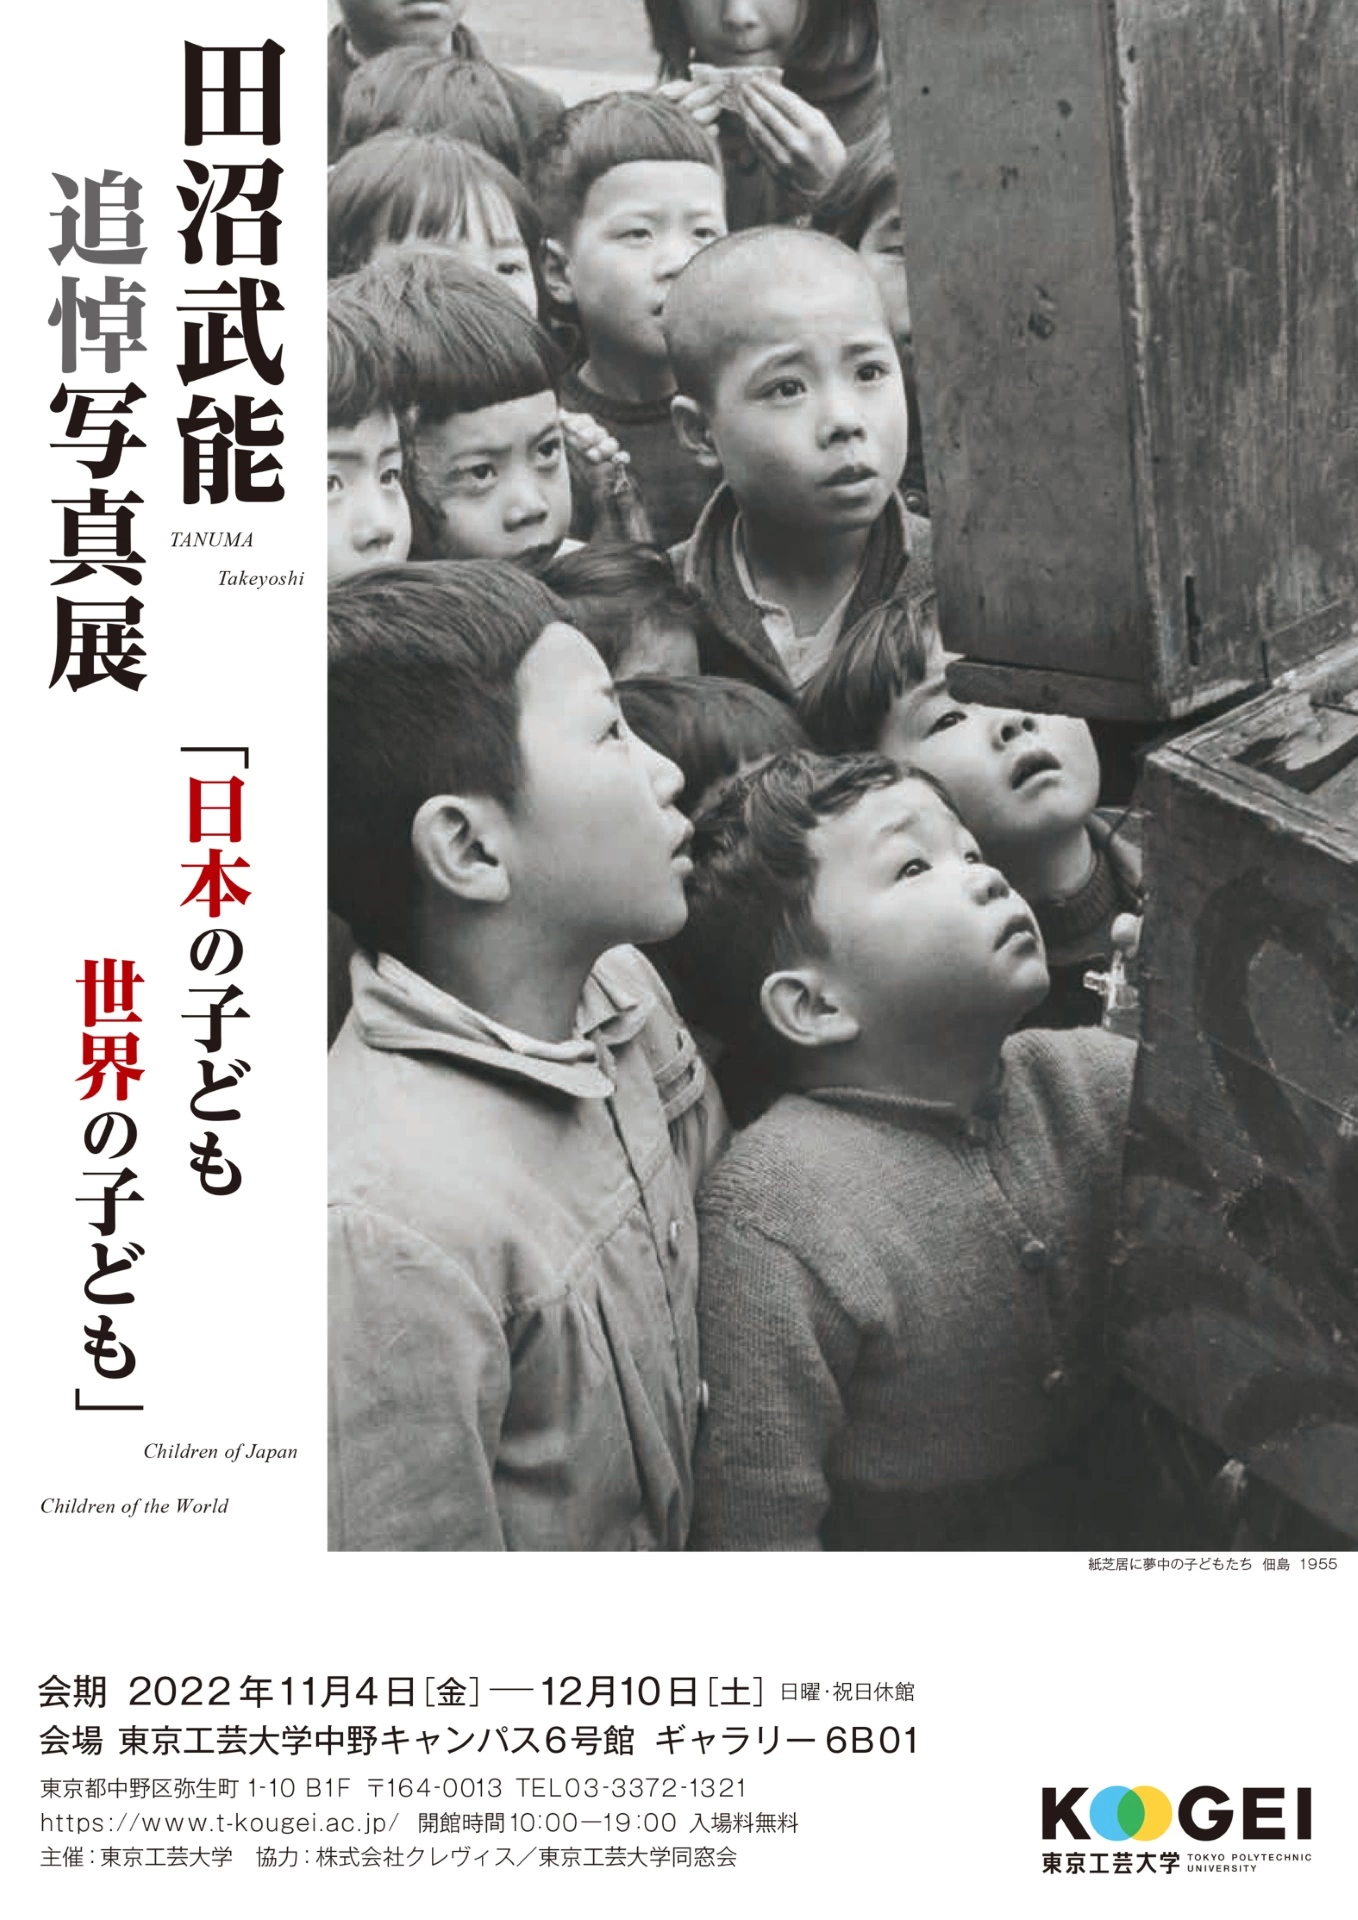 田沼武能 追悼写真展「日本の子ども世界の子ども」